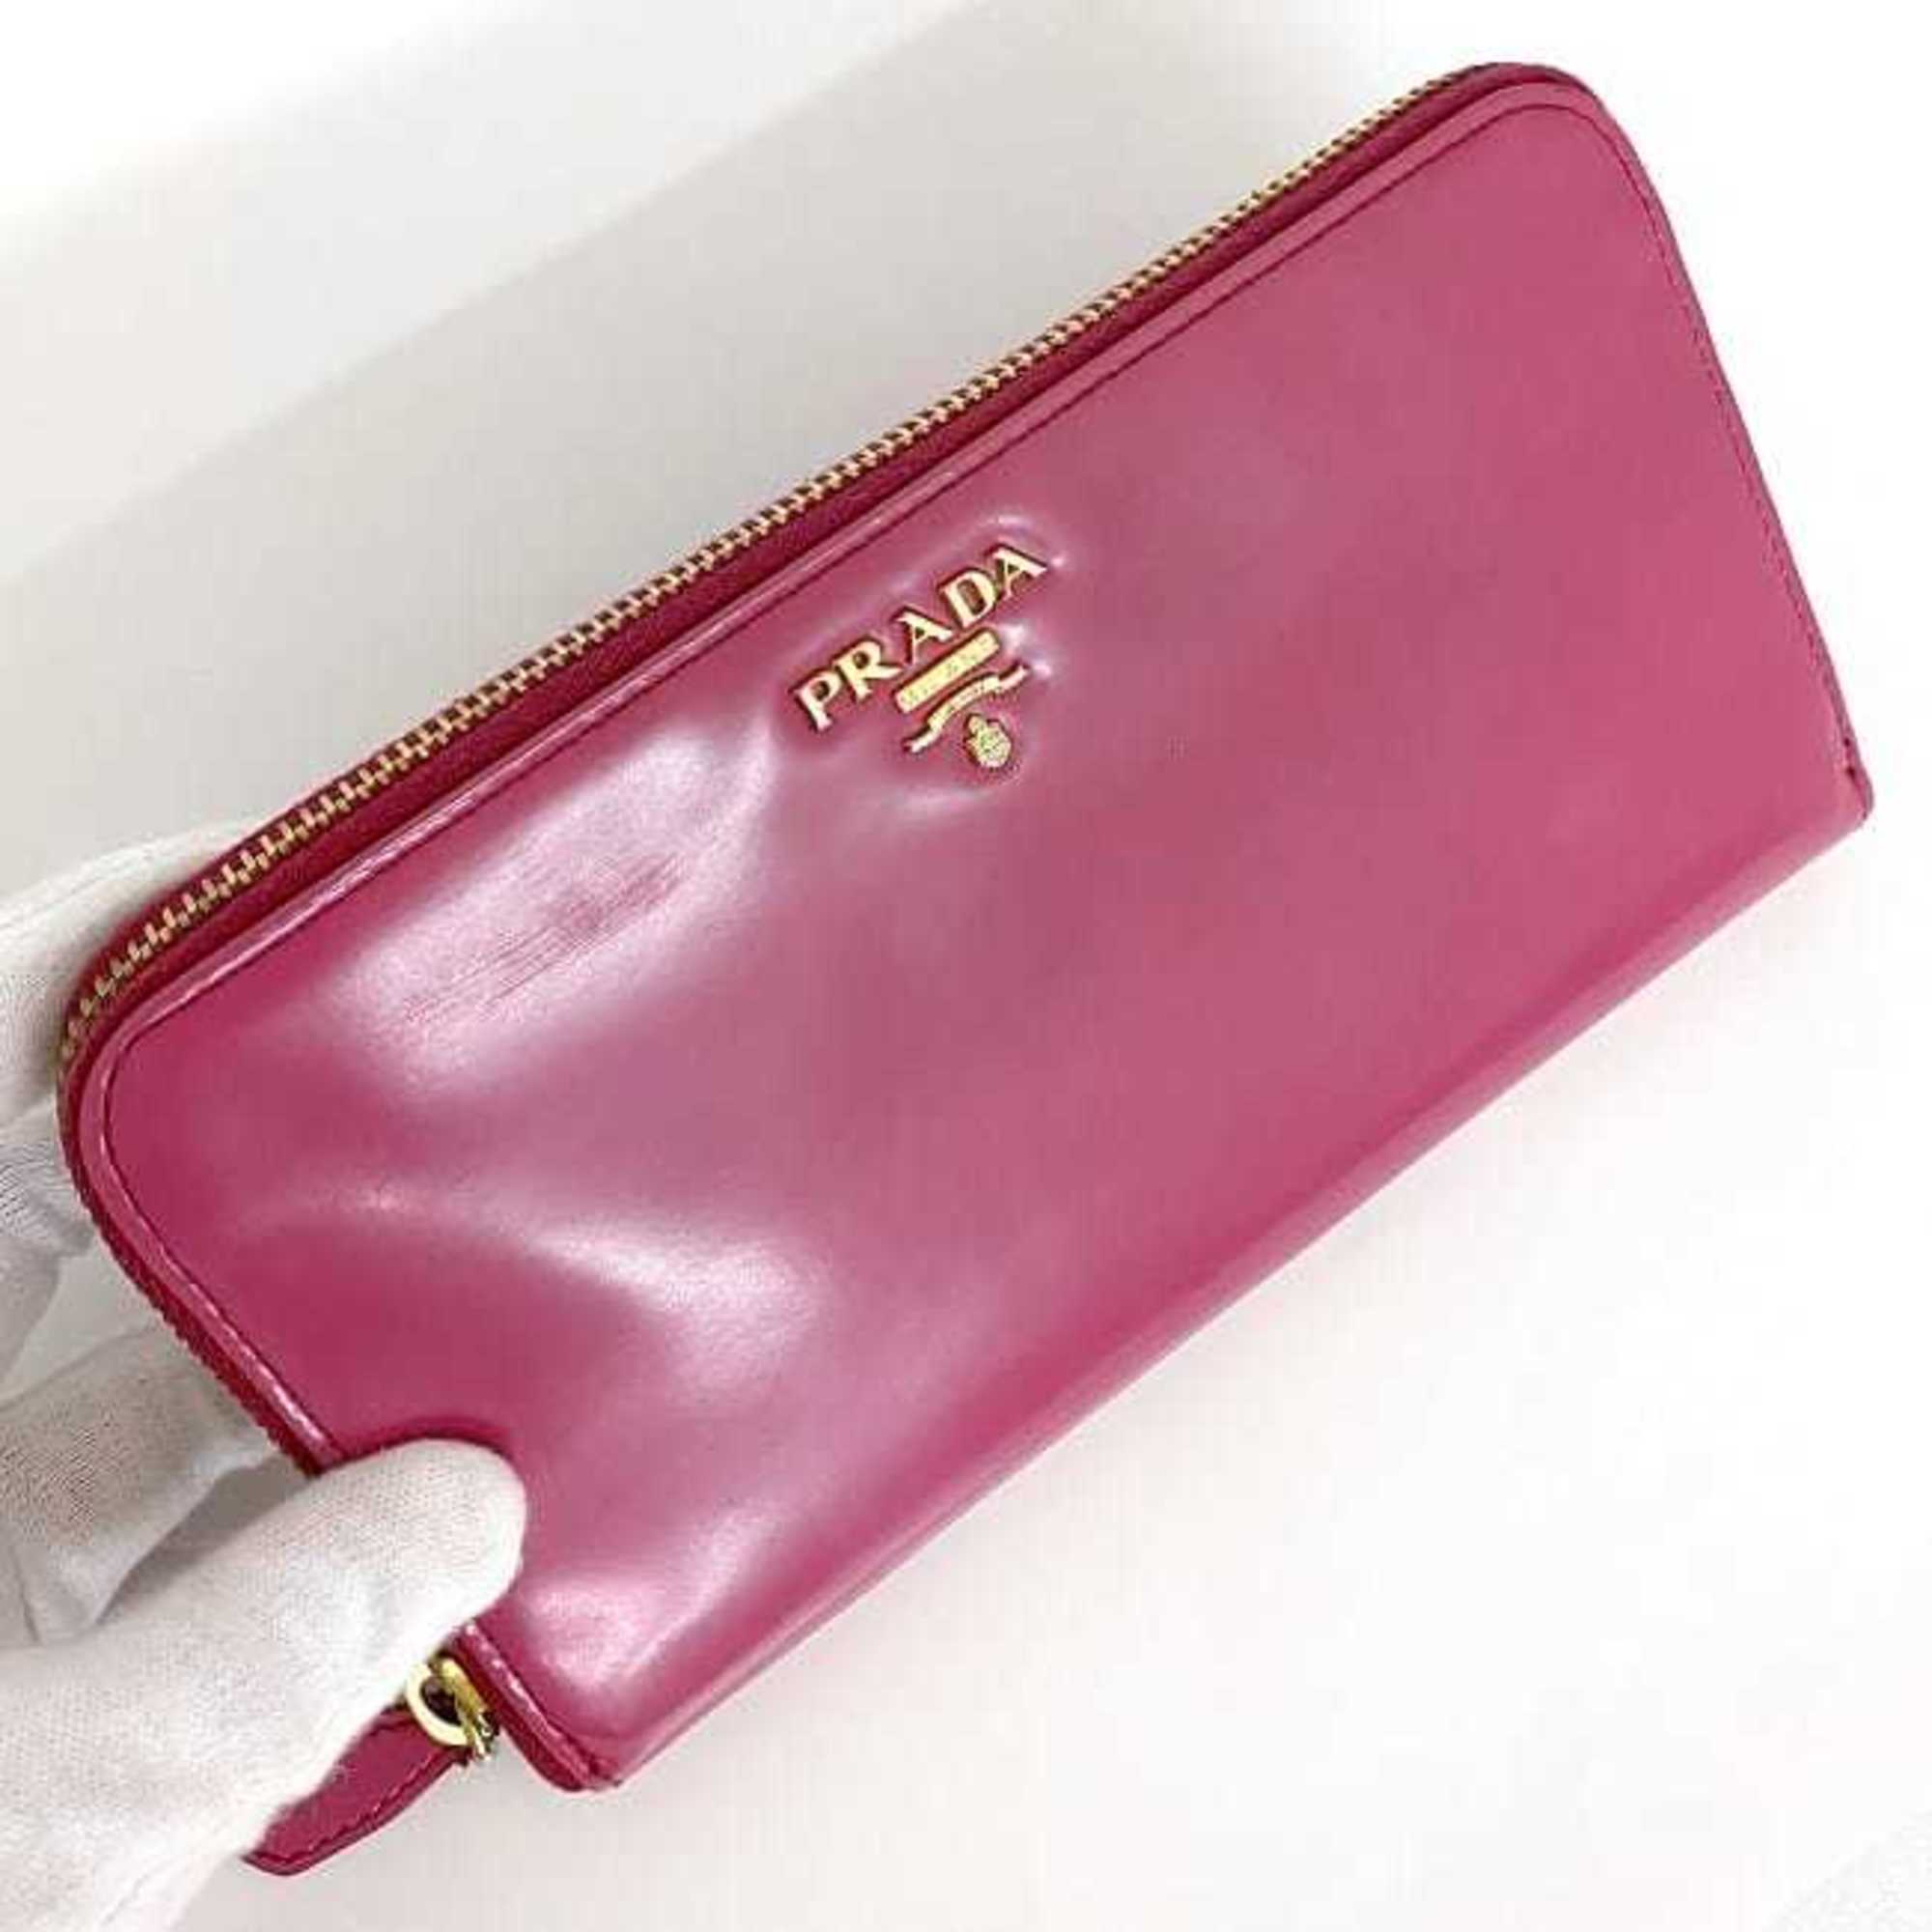 Prada Round Long Wallet Pink 1M0506 ec-19896 Leather PRADA Gold Ladies